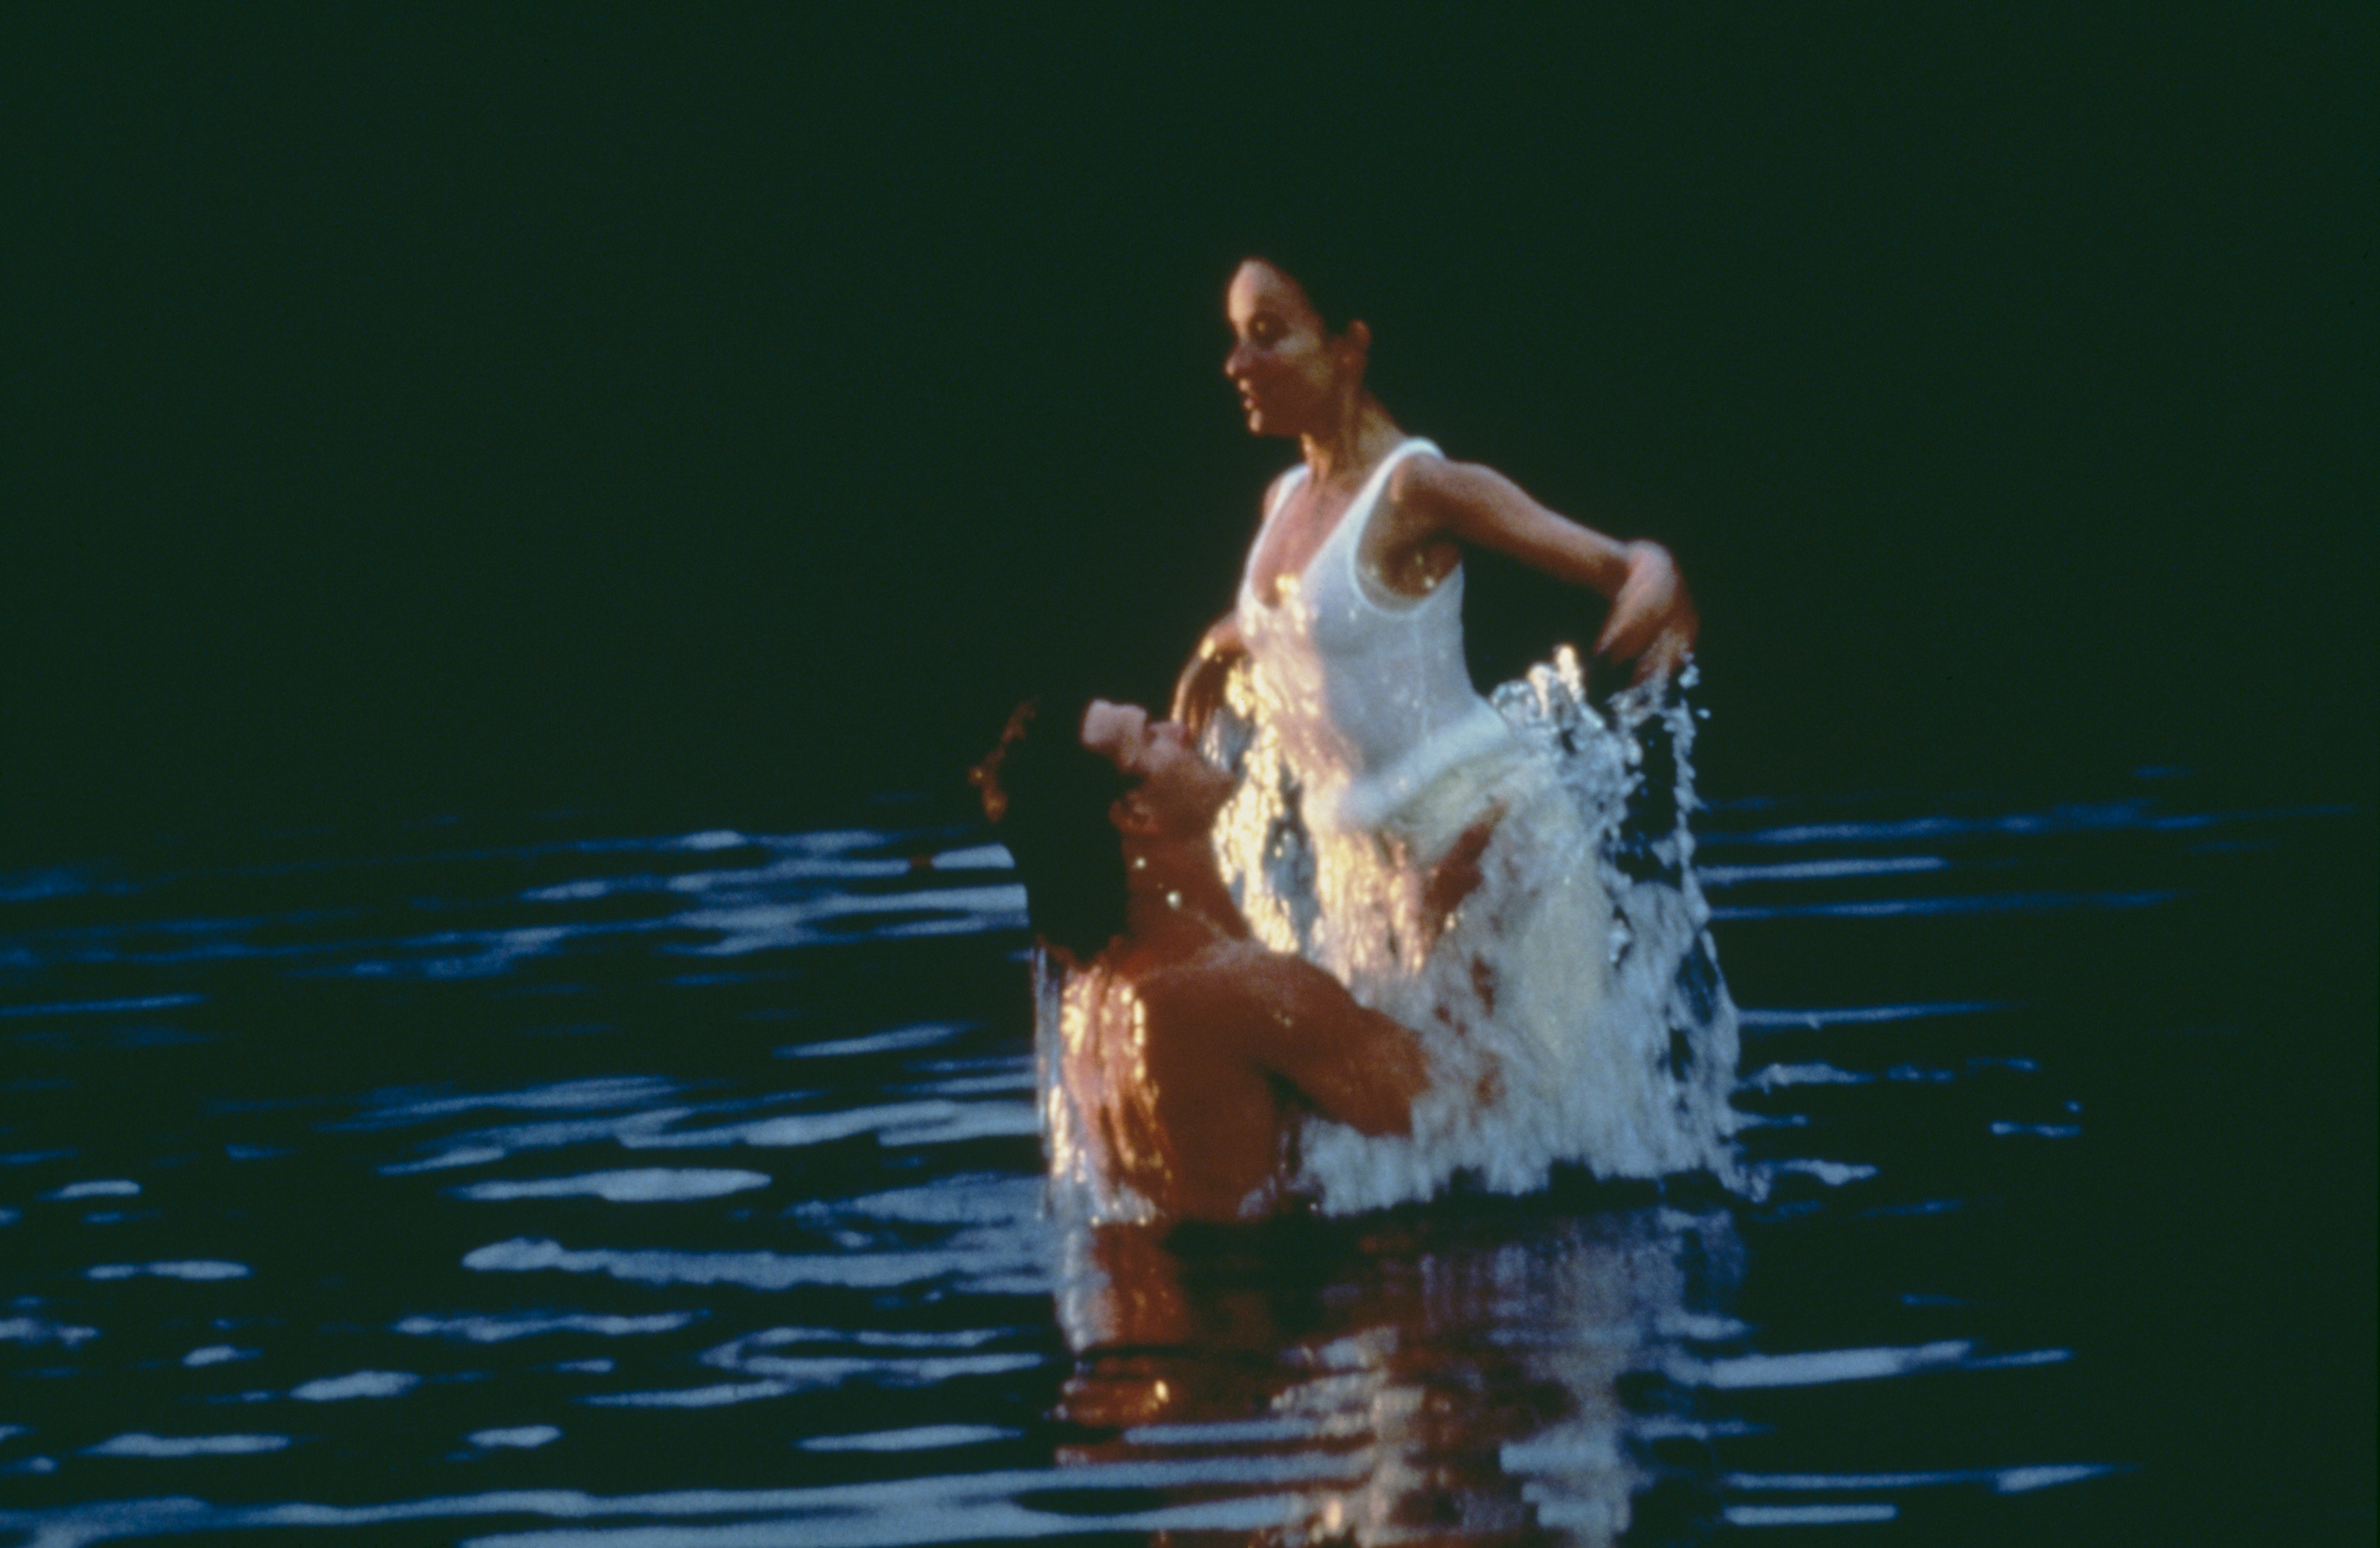 Patrick Swayze y Jennifer Grey en el rodaje de "Dirty Dancing", 1987 | Fuente: Getty Images